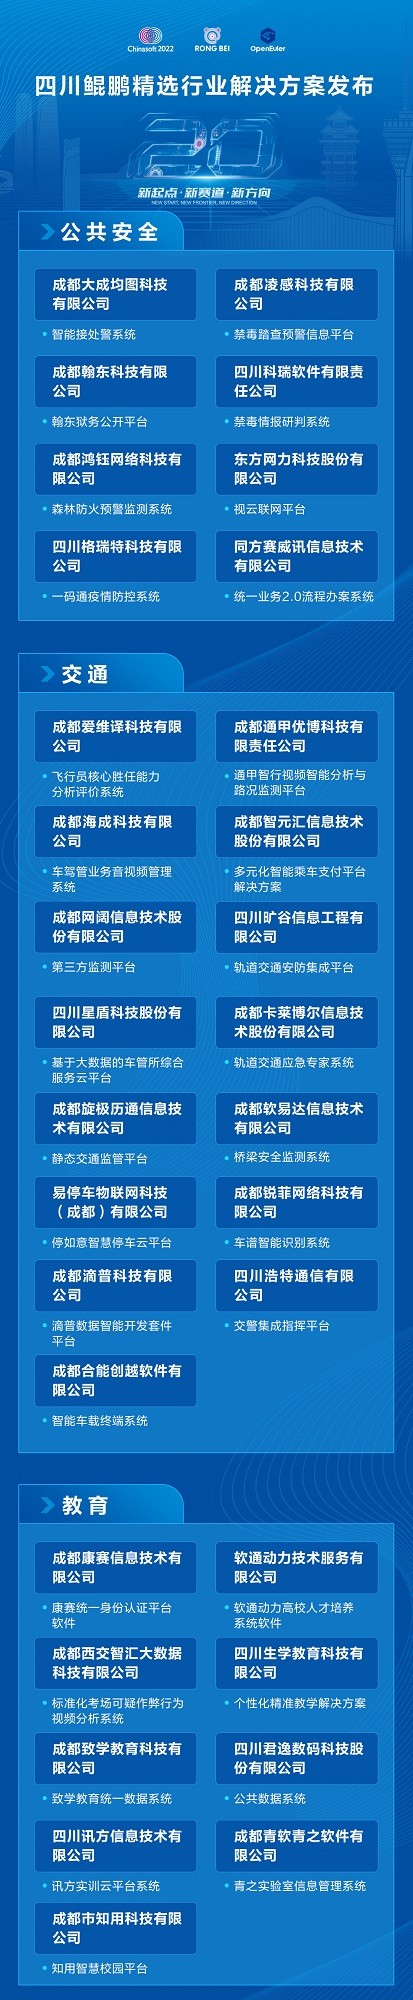 鲲鹏精选行业解决方案发布 100家四川企业分享标杆案例